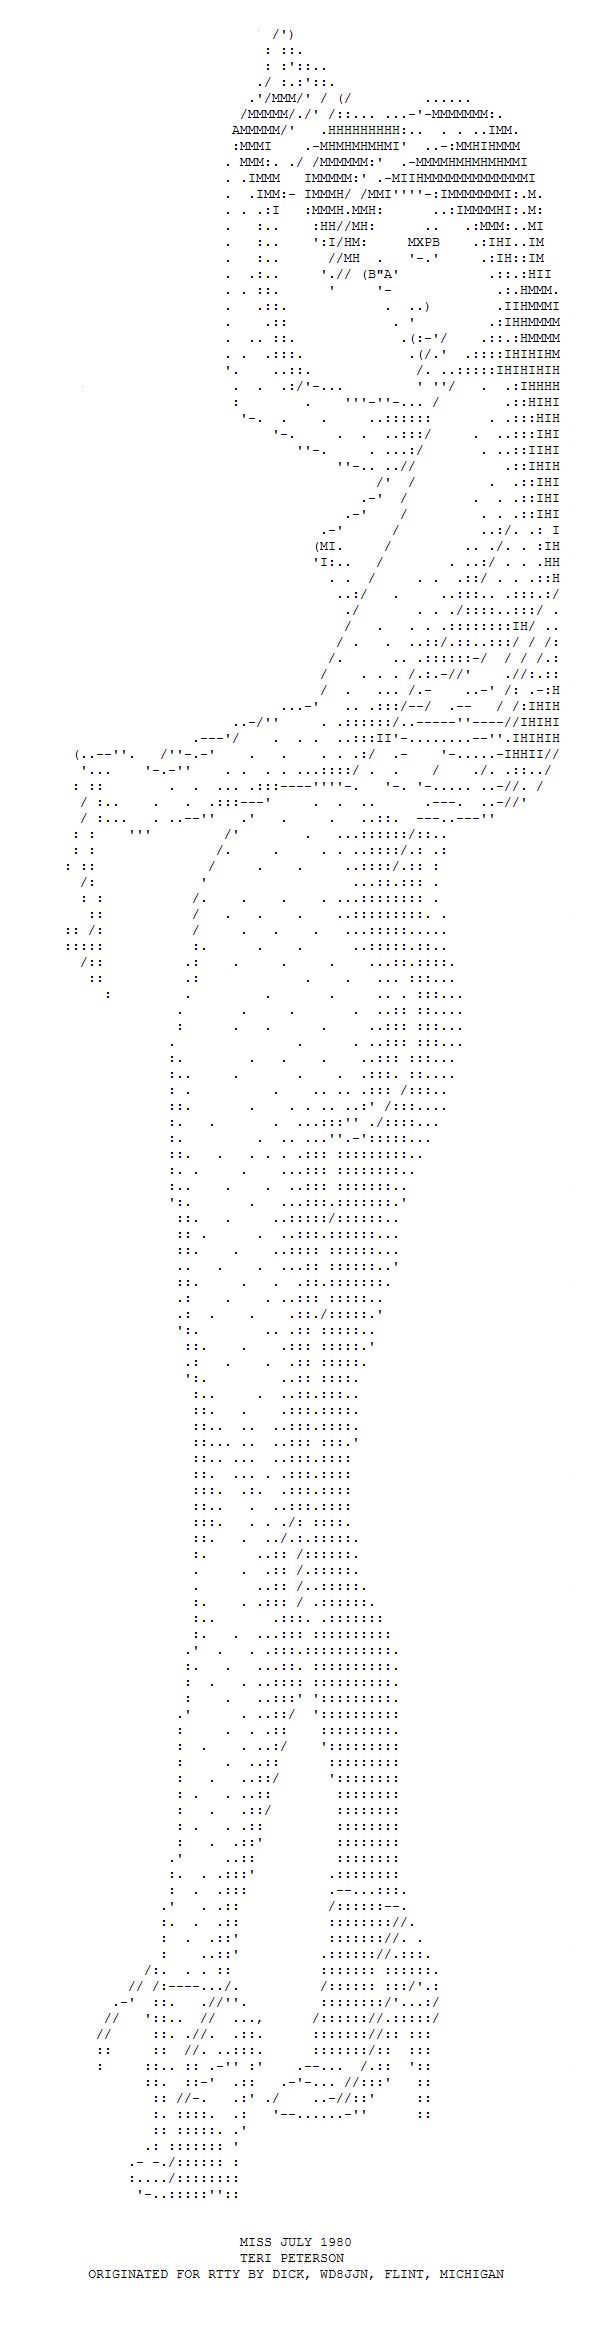 ASCII erotic images - 31